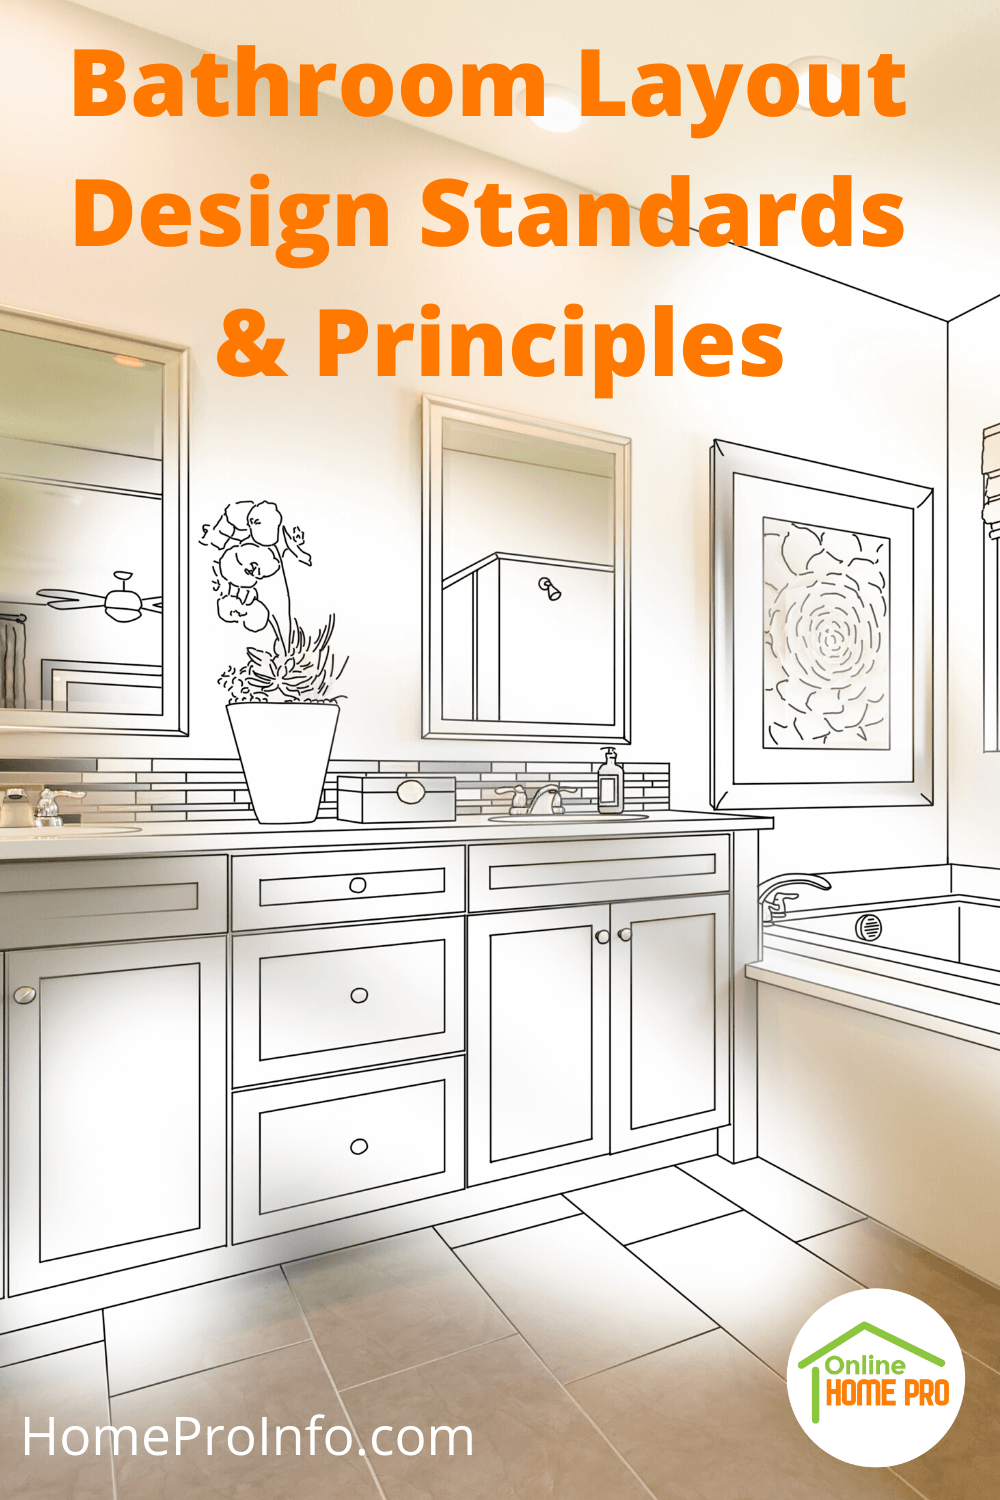 Bathroom Layout Design Standards & Principles